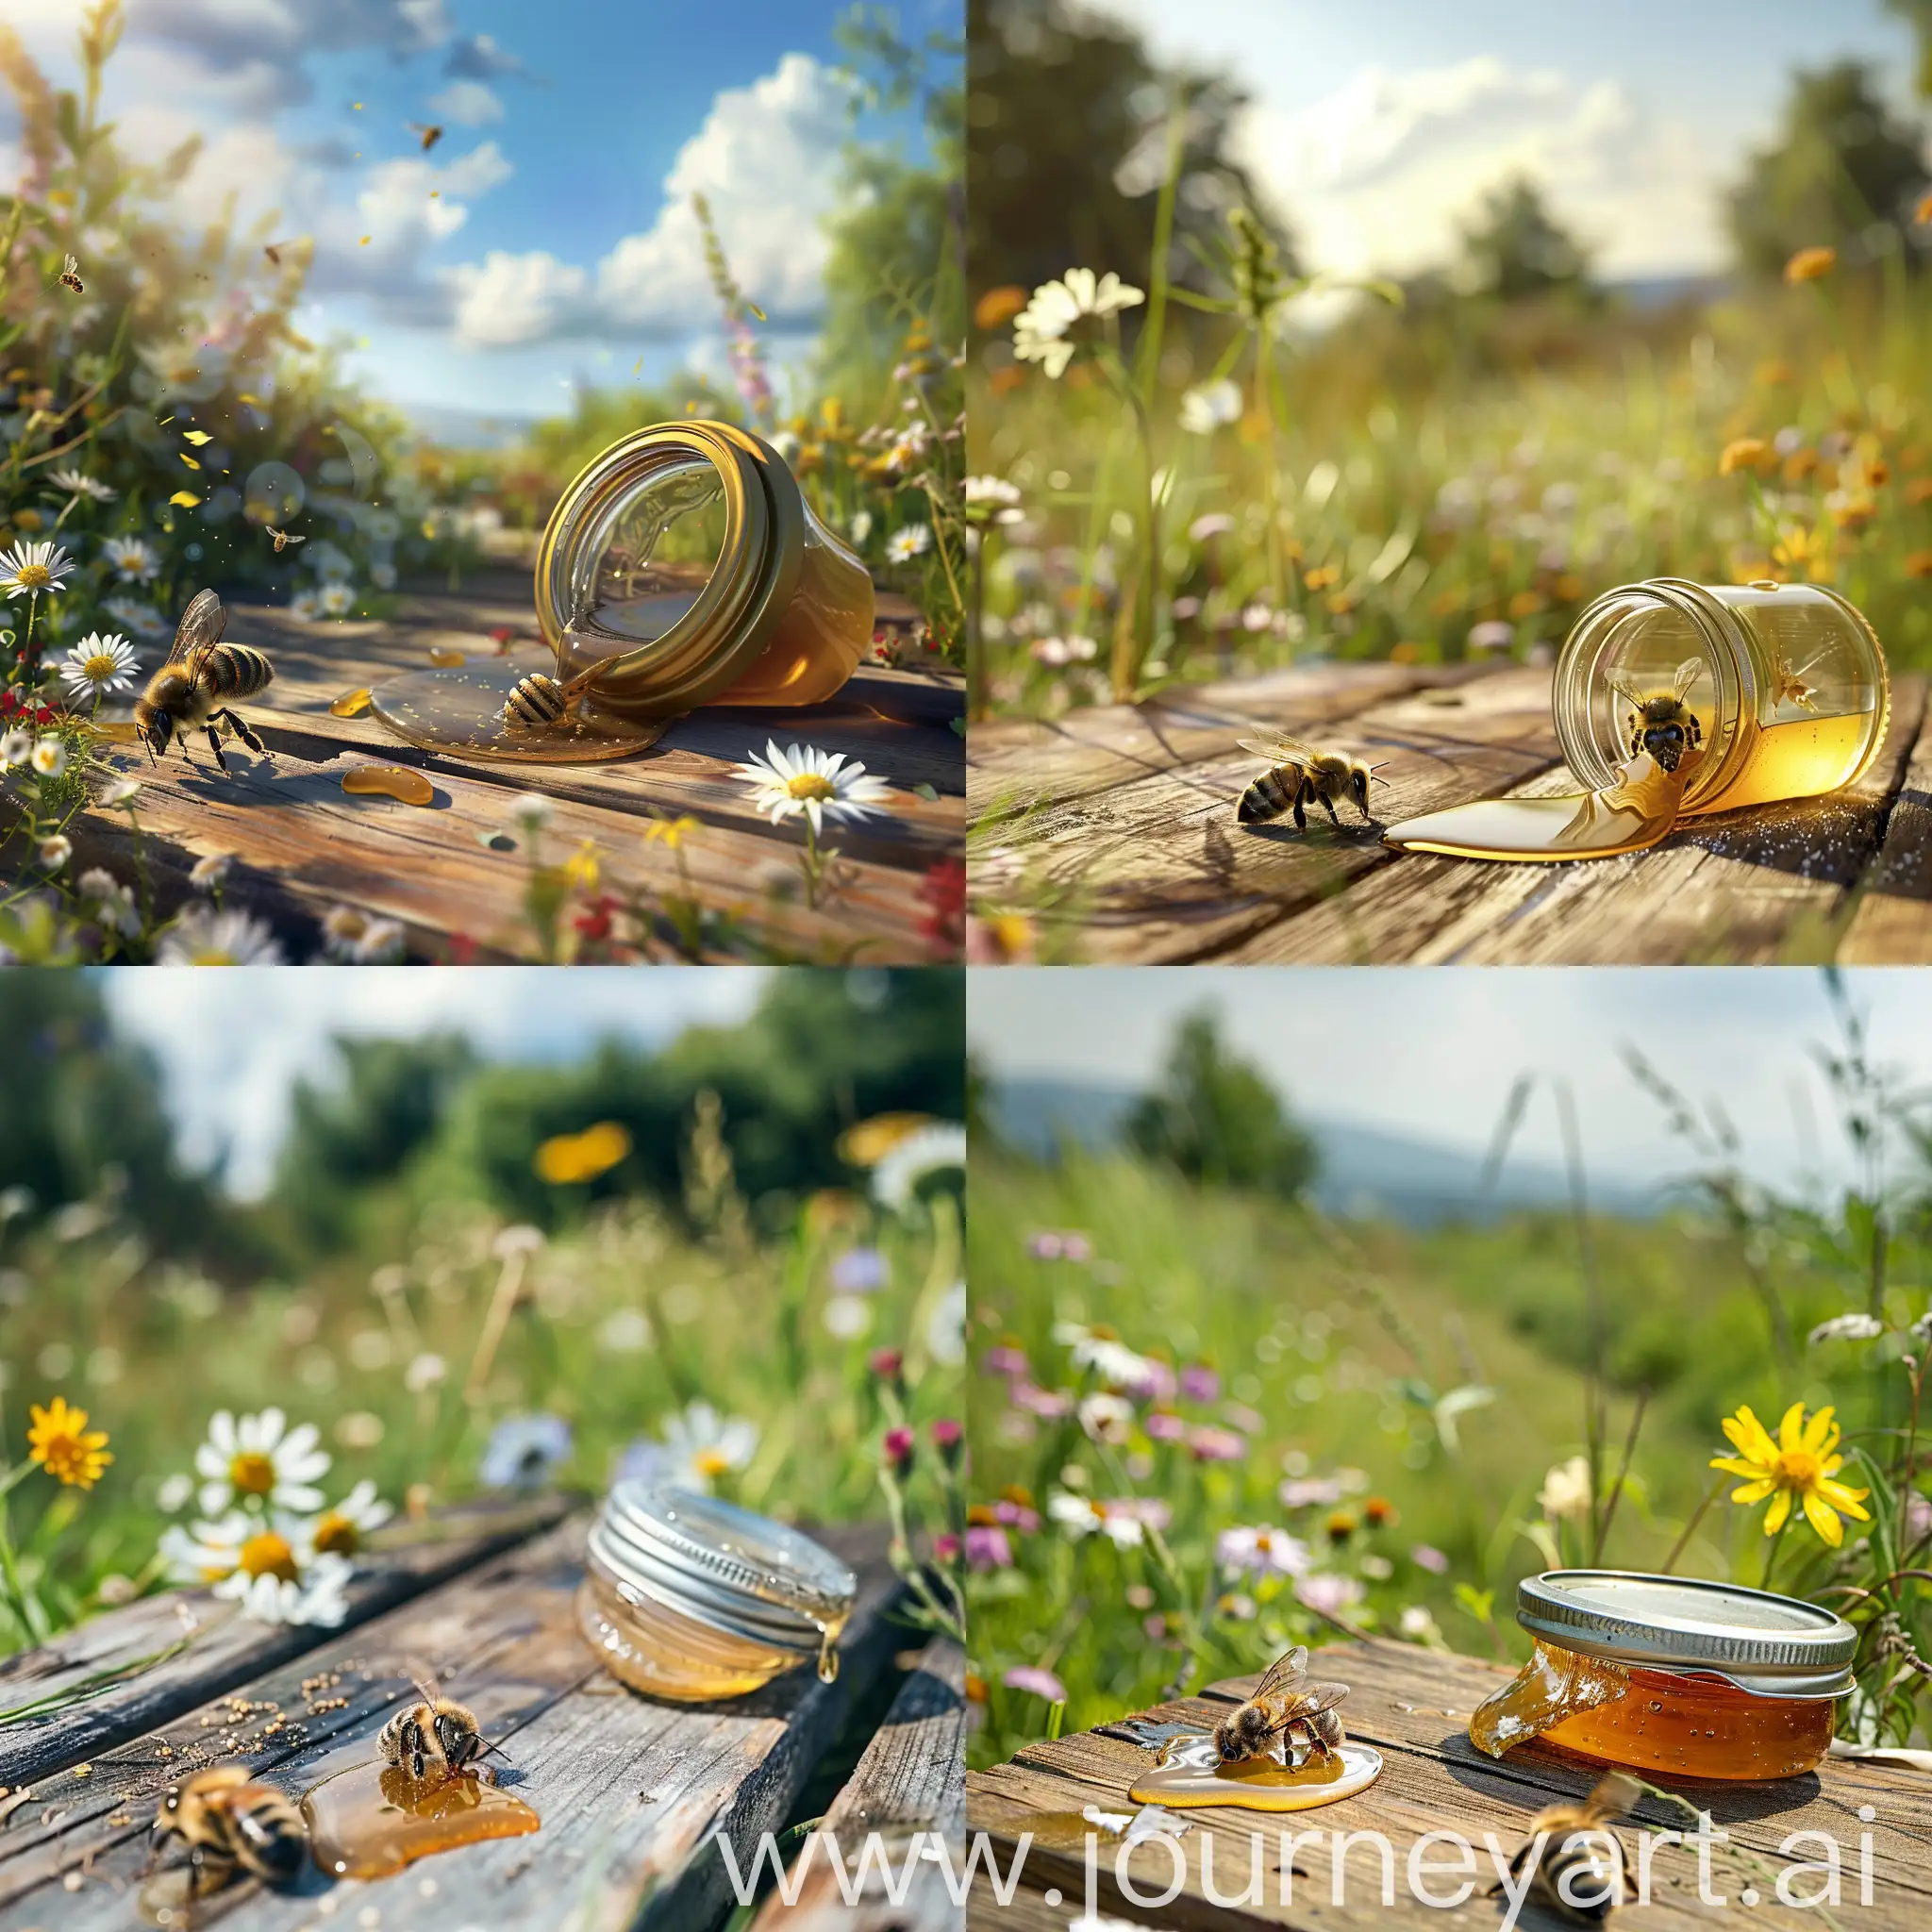 Umgefallenes offenes leeres Schraubglas liegt auf einem Holztisch im Freien. Eine kleine Honigbiene sammelt ausgelaufenen Honig vom Tisch. Der Tisch steht auf einer Wiese mit blühenden Wildblumen.